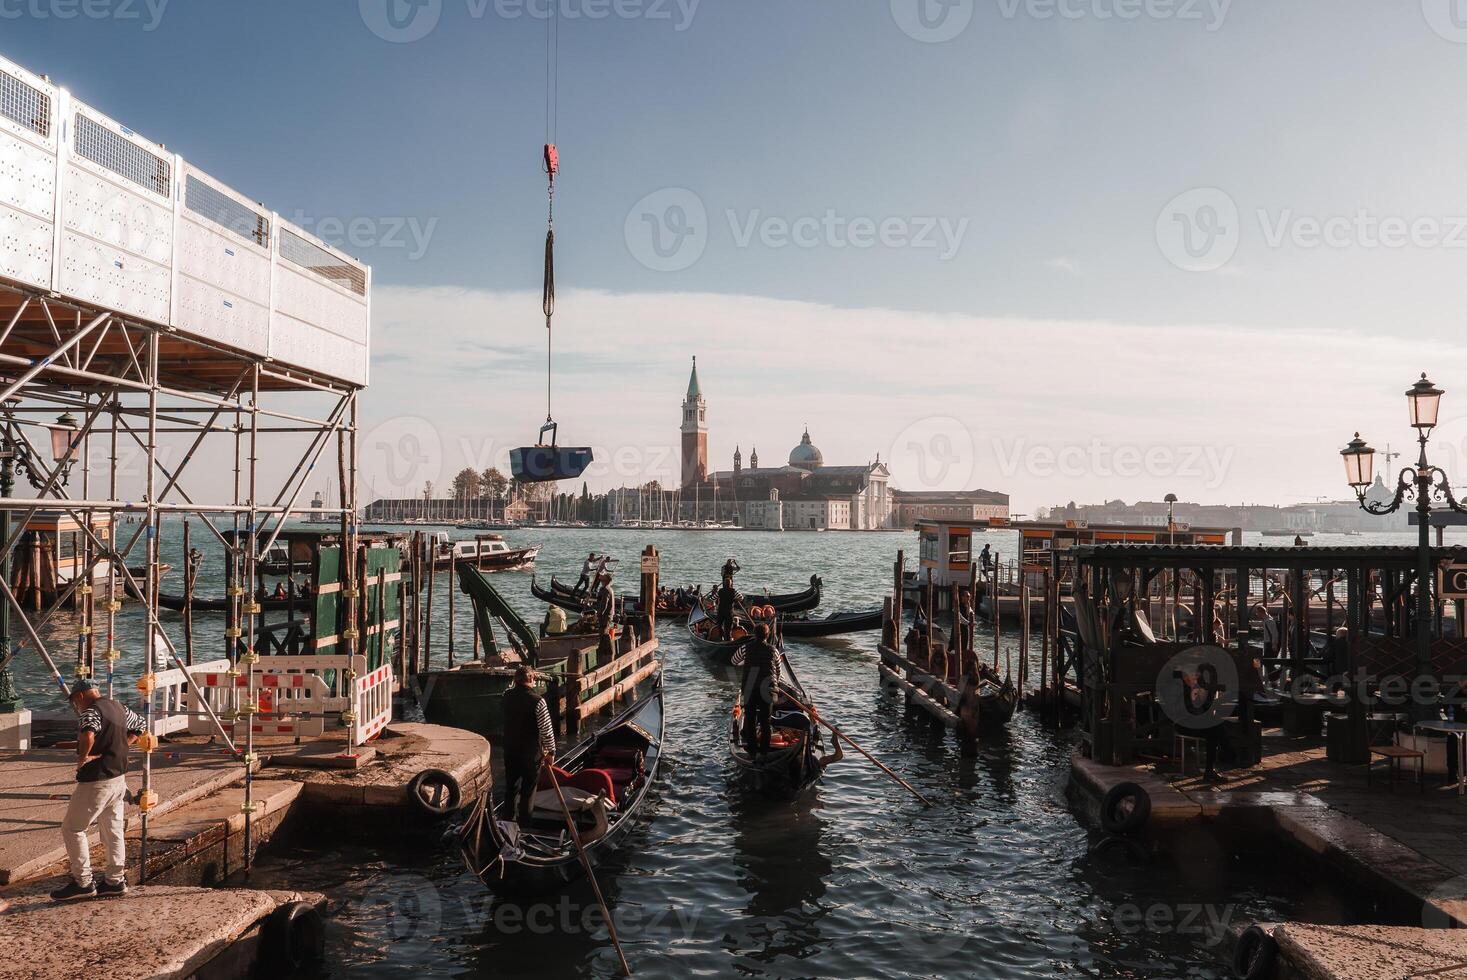 Venetië gondel aangemeerd in rustig water met Nee gebouwen of boten in zicht foto